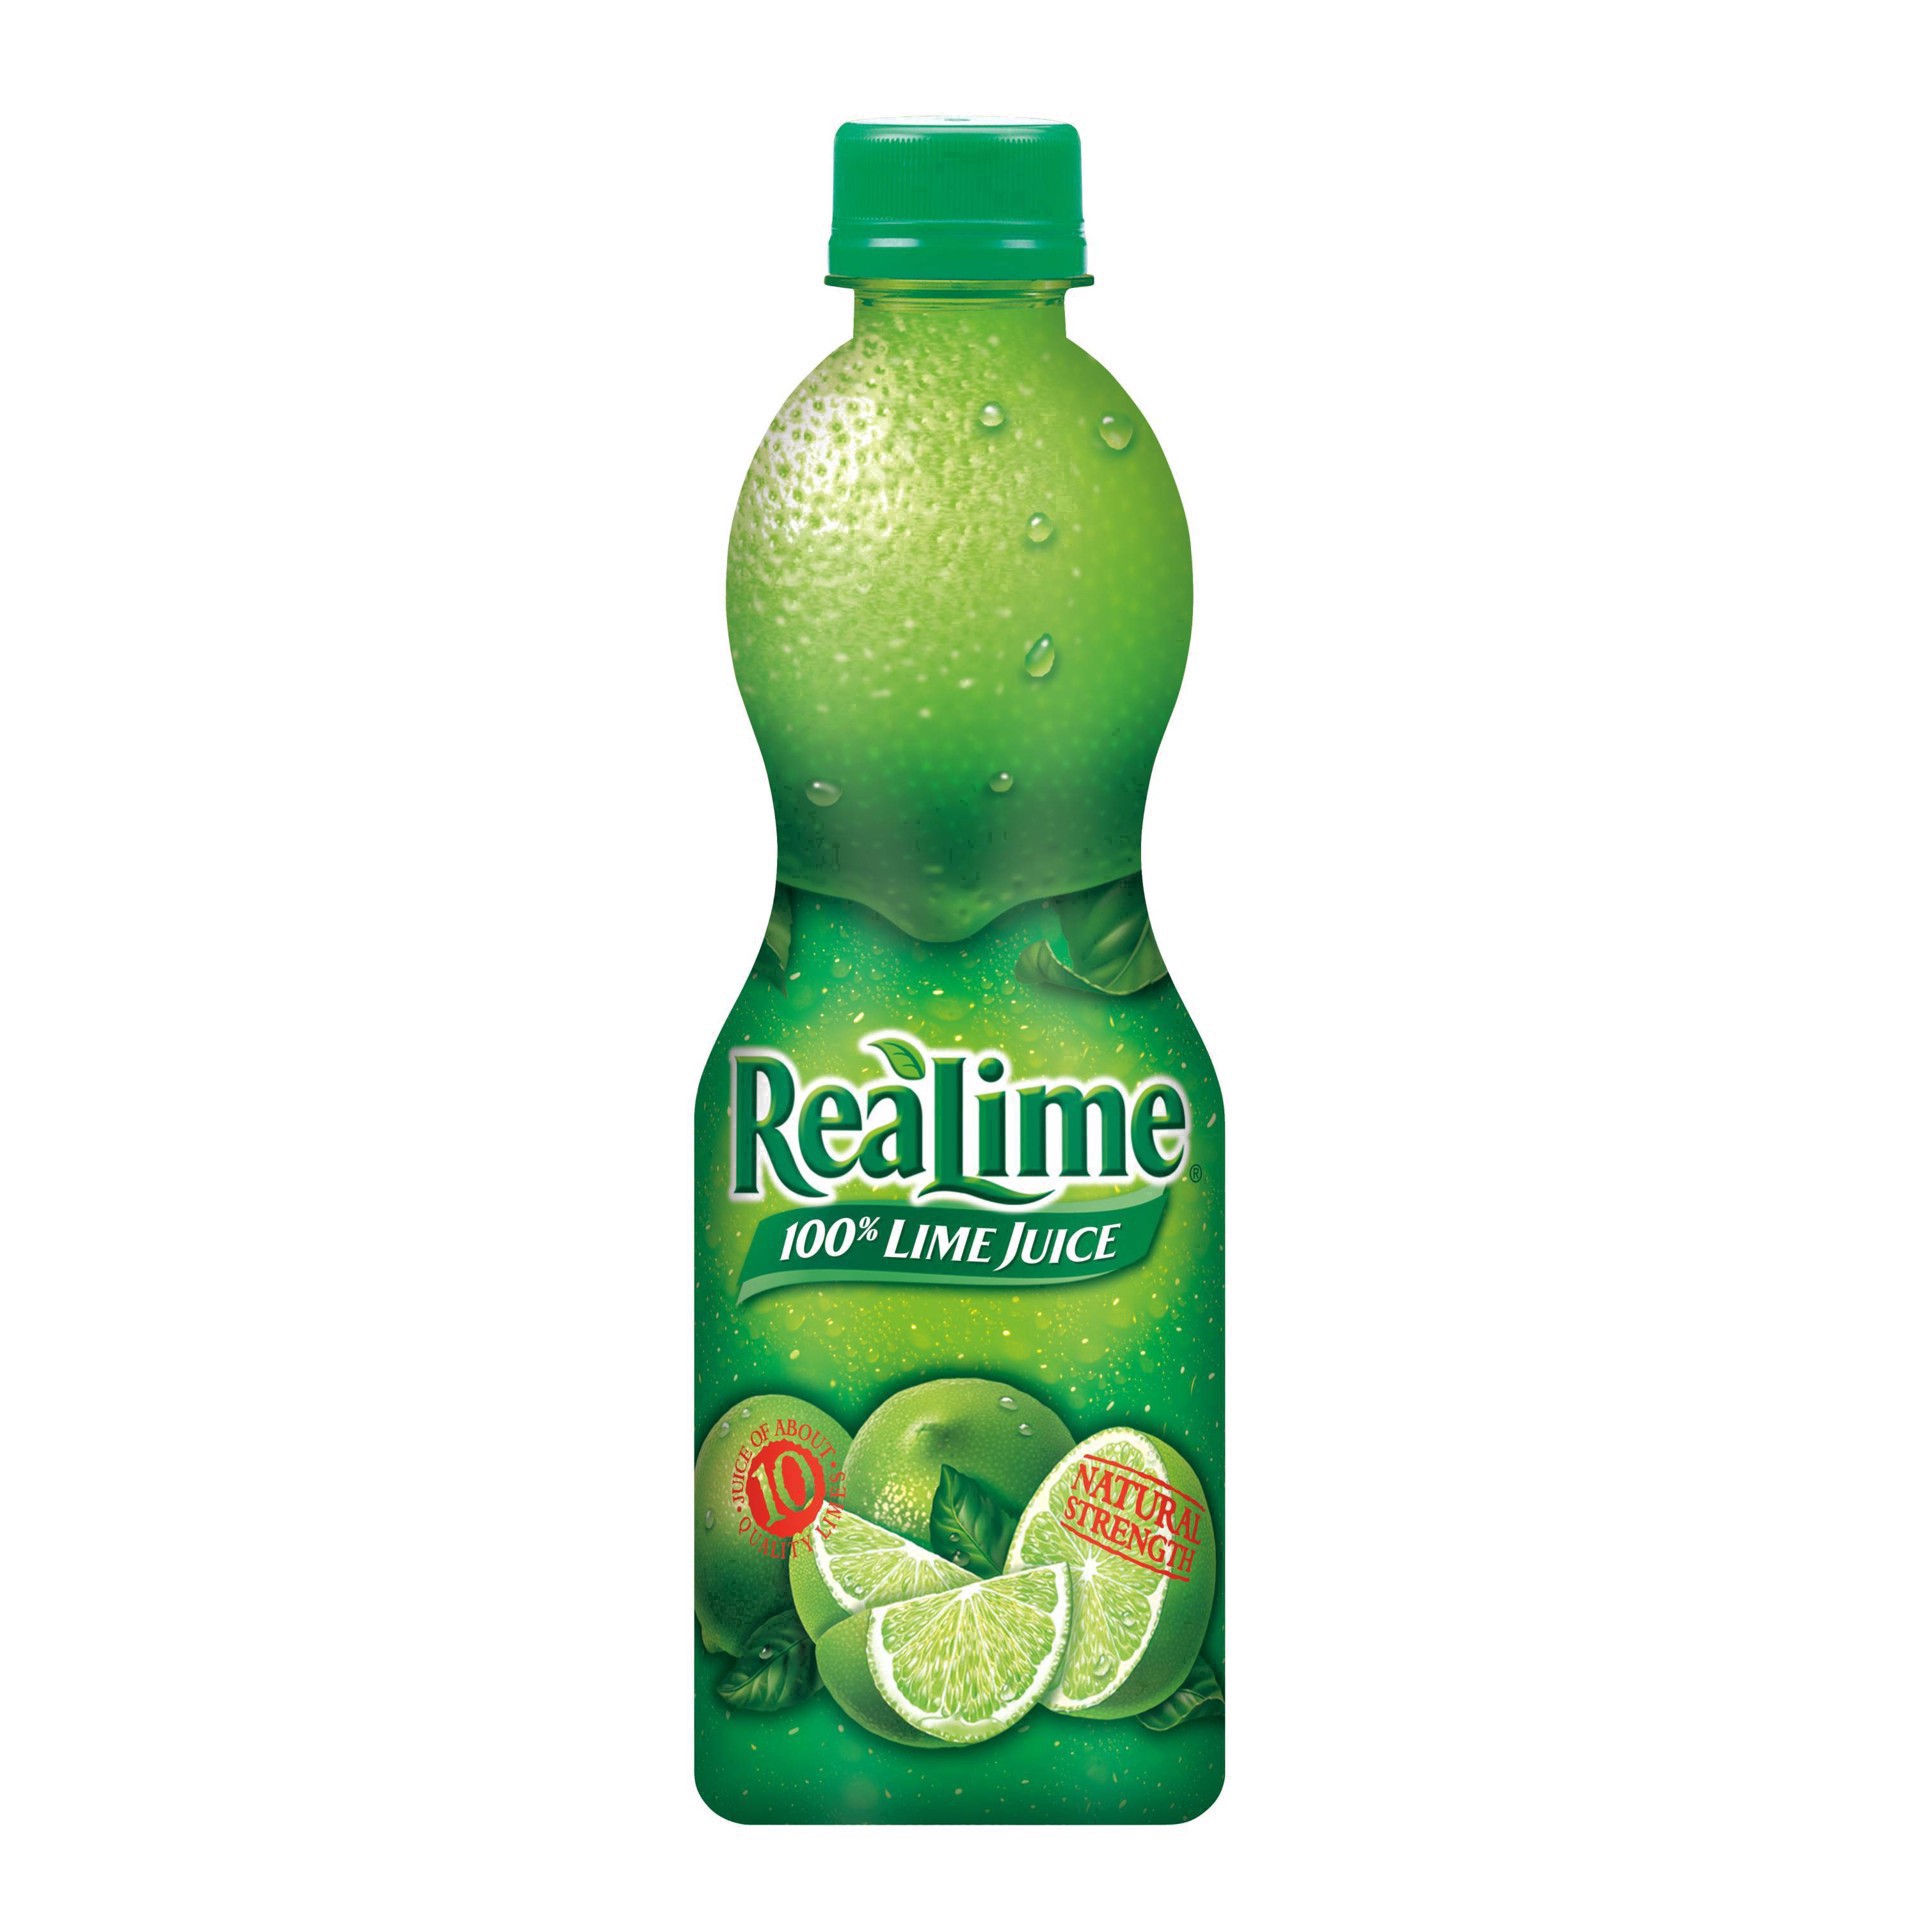 slide 31 of 68, ReaLime 100% Lime Juice Bottle, 15 fl oz